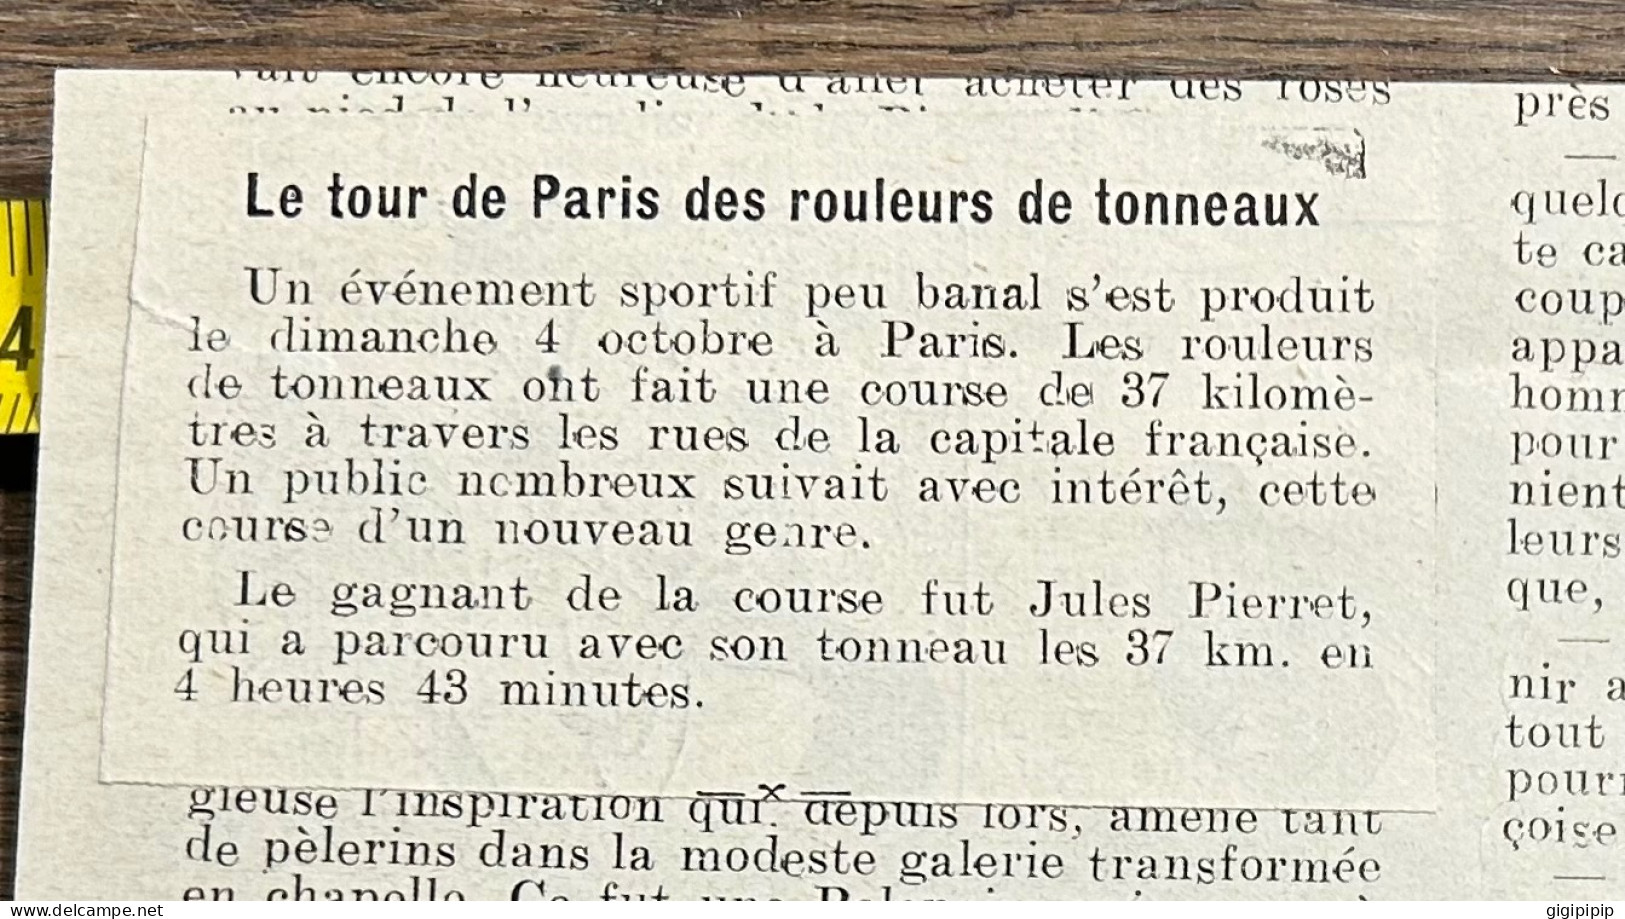 1908 PATI Sports Bizarres Concours Des Rouleurs De Tonneaux, à Paris Jules Pierret - Colecciones